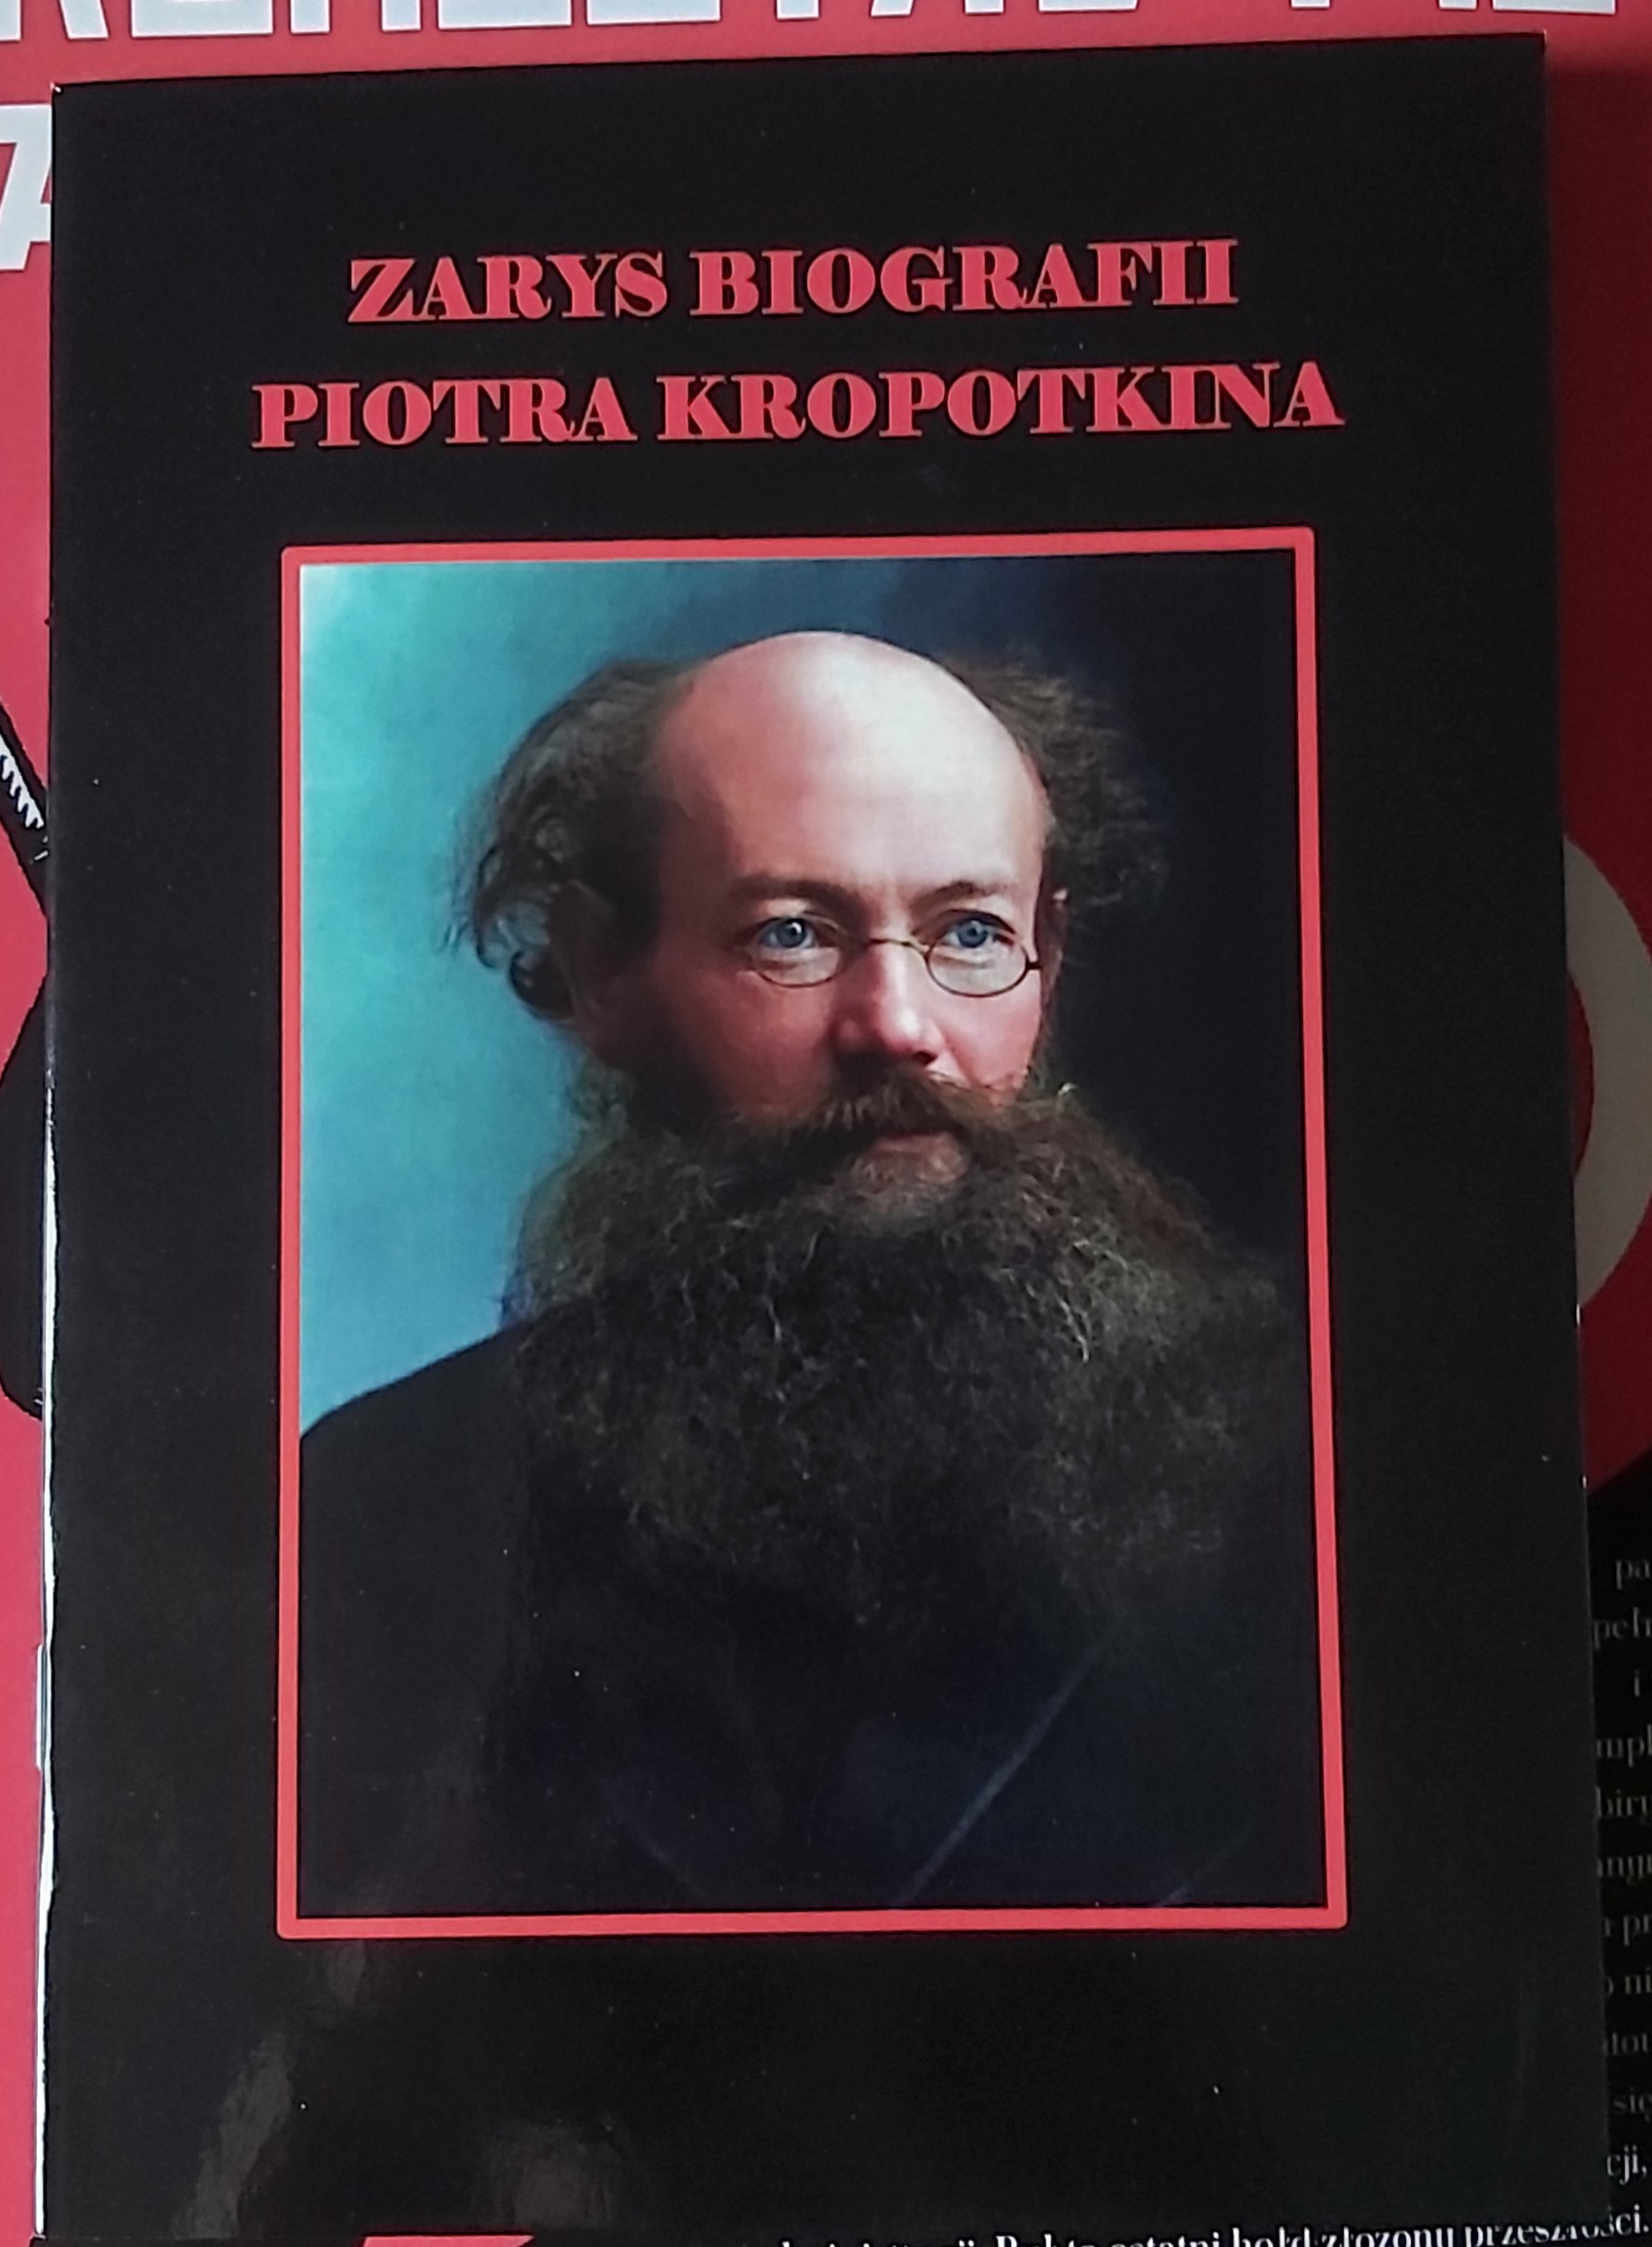 Zarys biografii Piotra Kropotkina